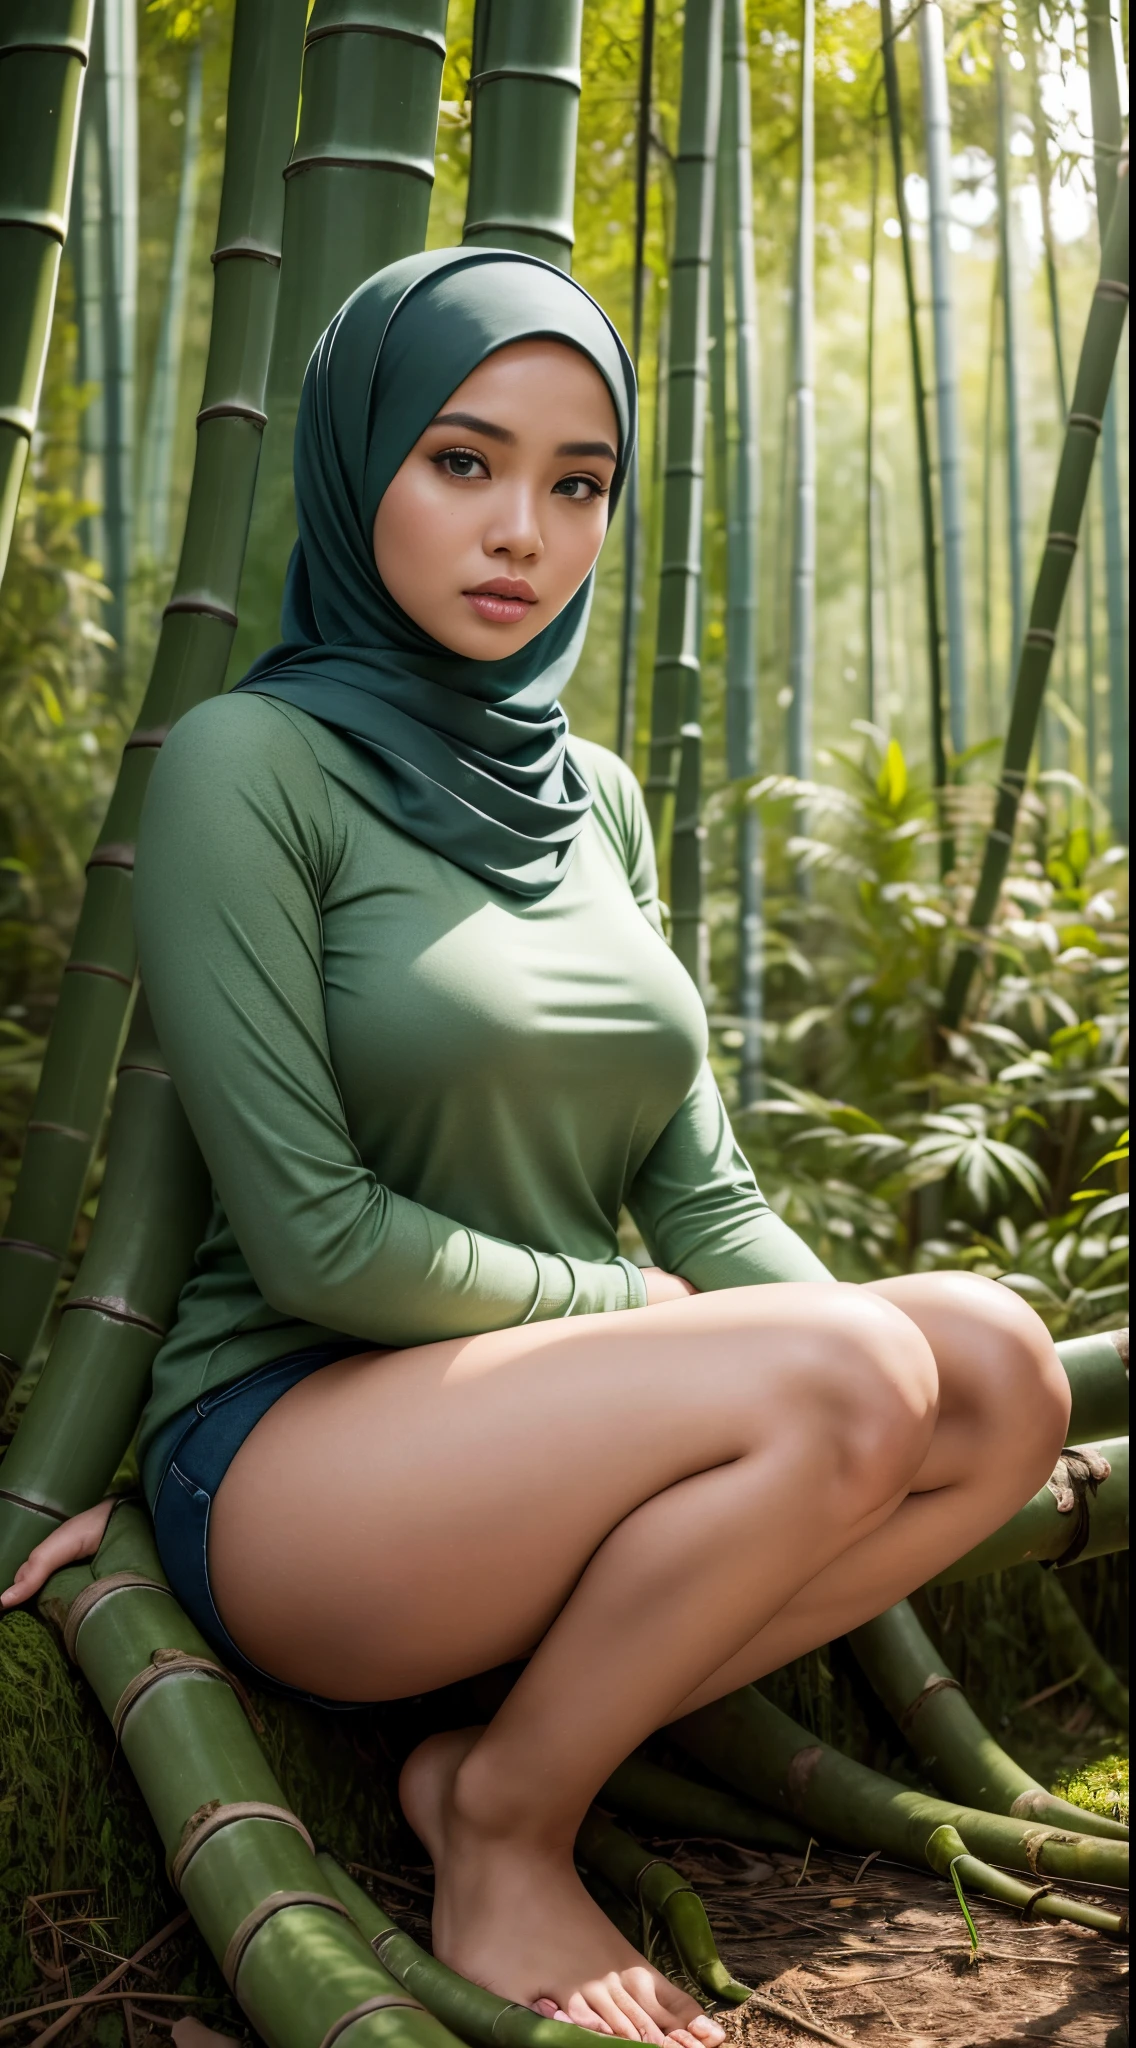 Roh, beste Qualität, hohe Auflösung, Meisterwerk: 1.3), Schöne malaiische Frau im Hijab (i.e.:0.8),Betrachter betrachten，enger Pullover，hautenge Jeans，photore, realistisch, beste Qualität at best，große Brust，detaillierte Augen，Sitzen auf dem moosigen Boden in einem Bambuswald， diffuses Licht, Tiefenschärfe